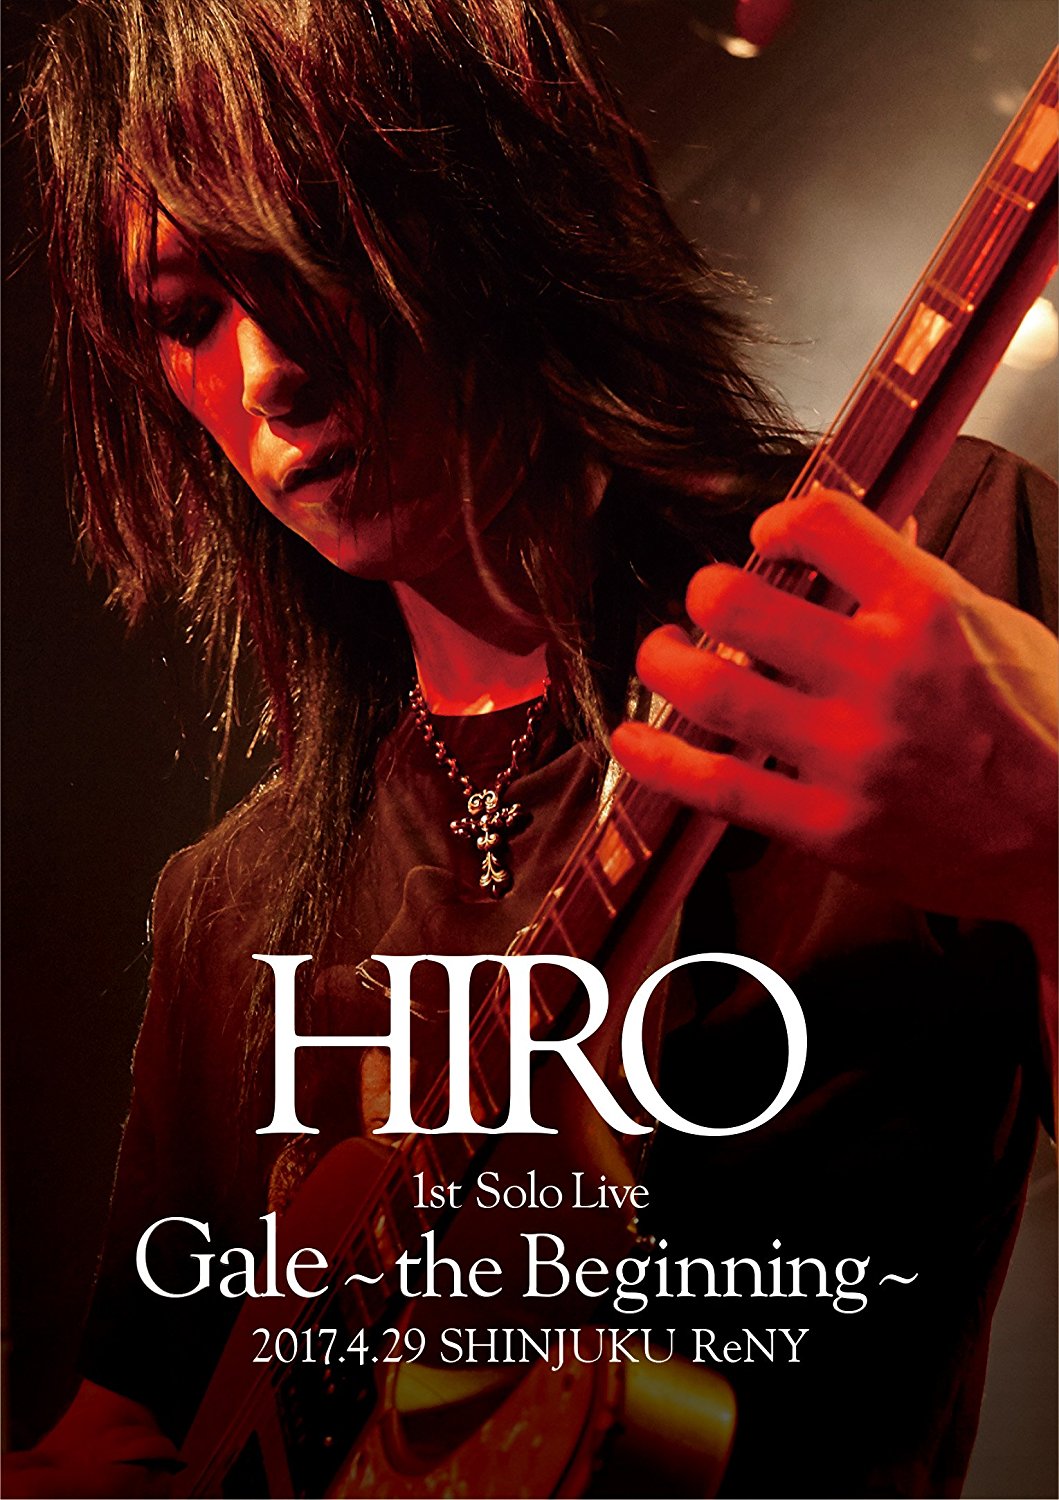 HIRO ( ヒロ )  の CD 【初回Blu-ray】HIRO 1st Solo Live 『Gale』~the Beginning~ 2017.4.29 SHINJUKU ReNY